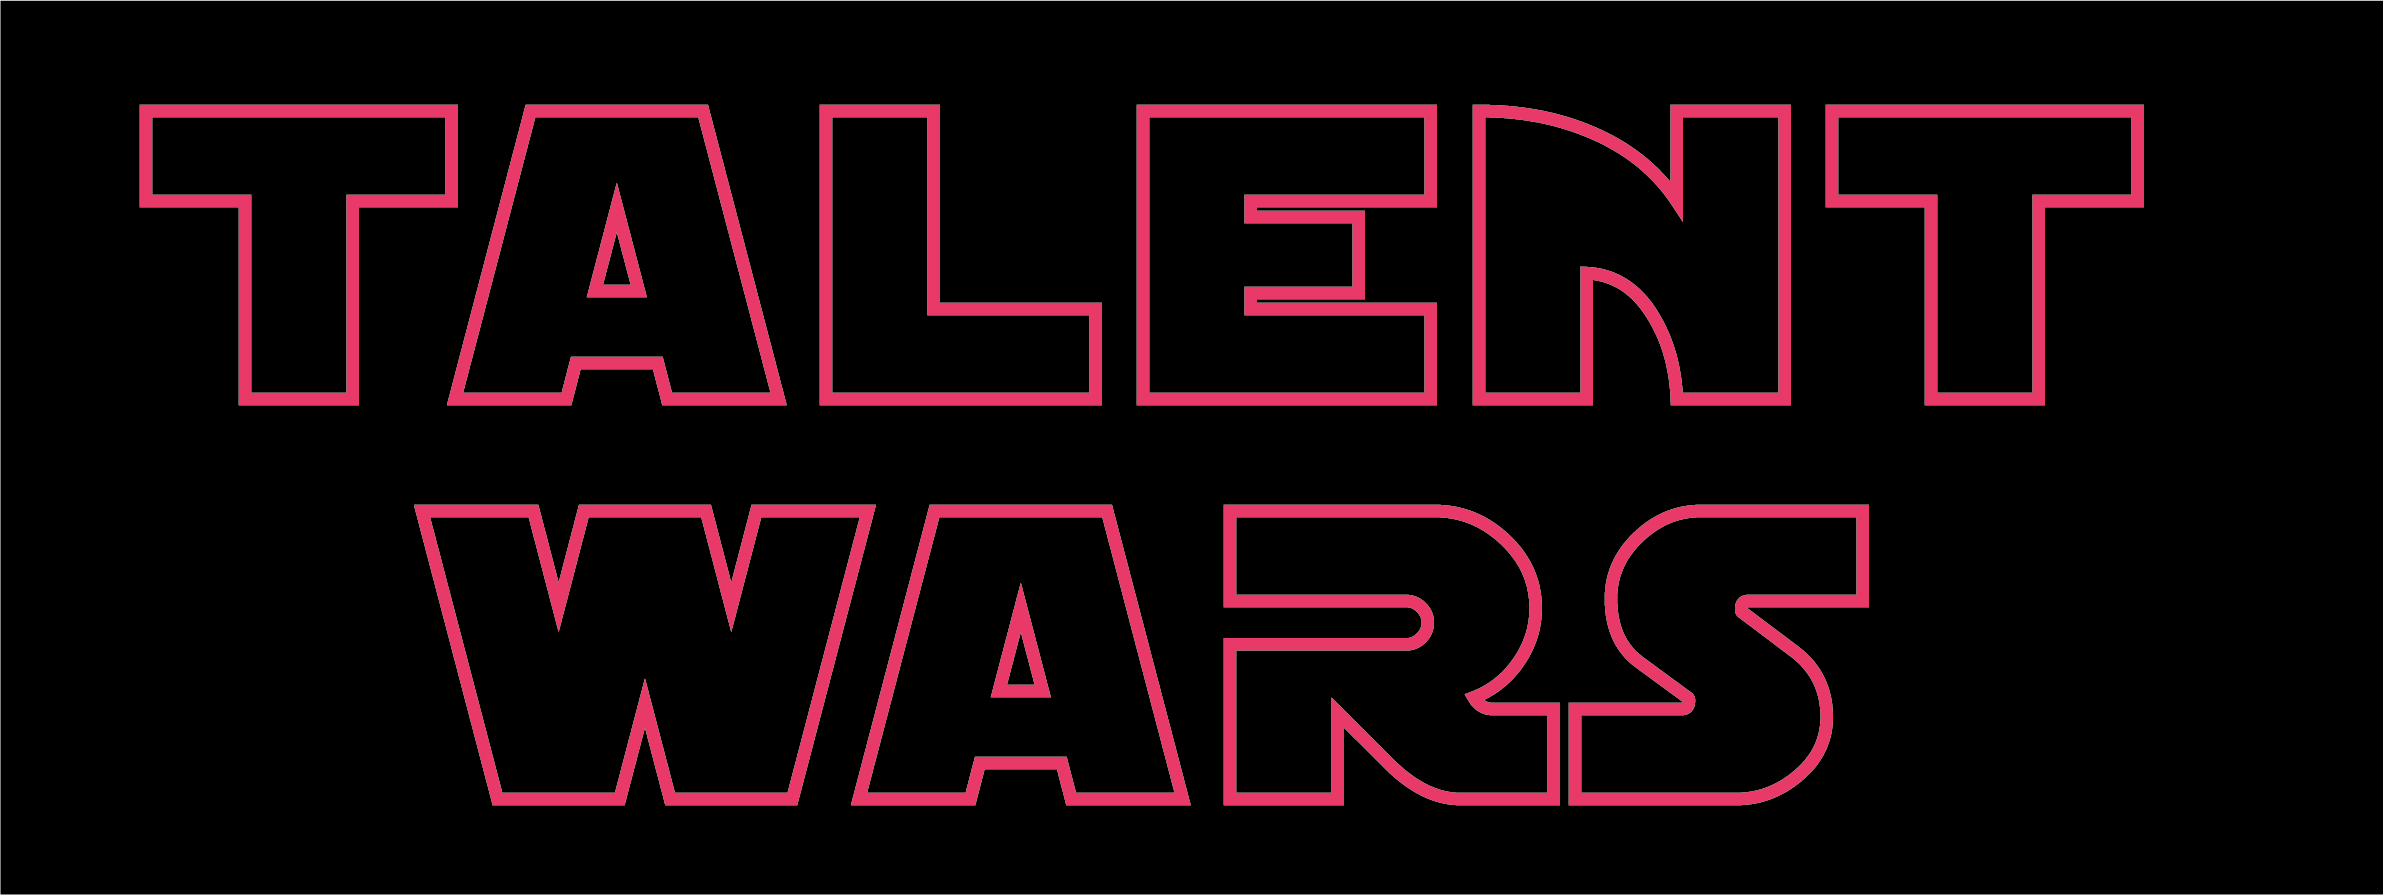 visuel_talent-wars